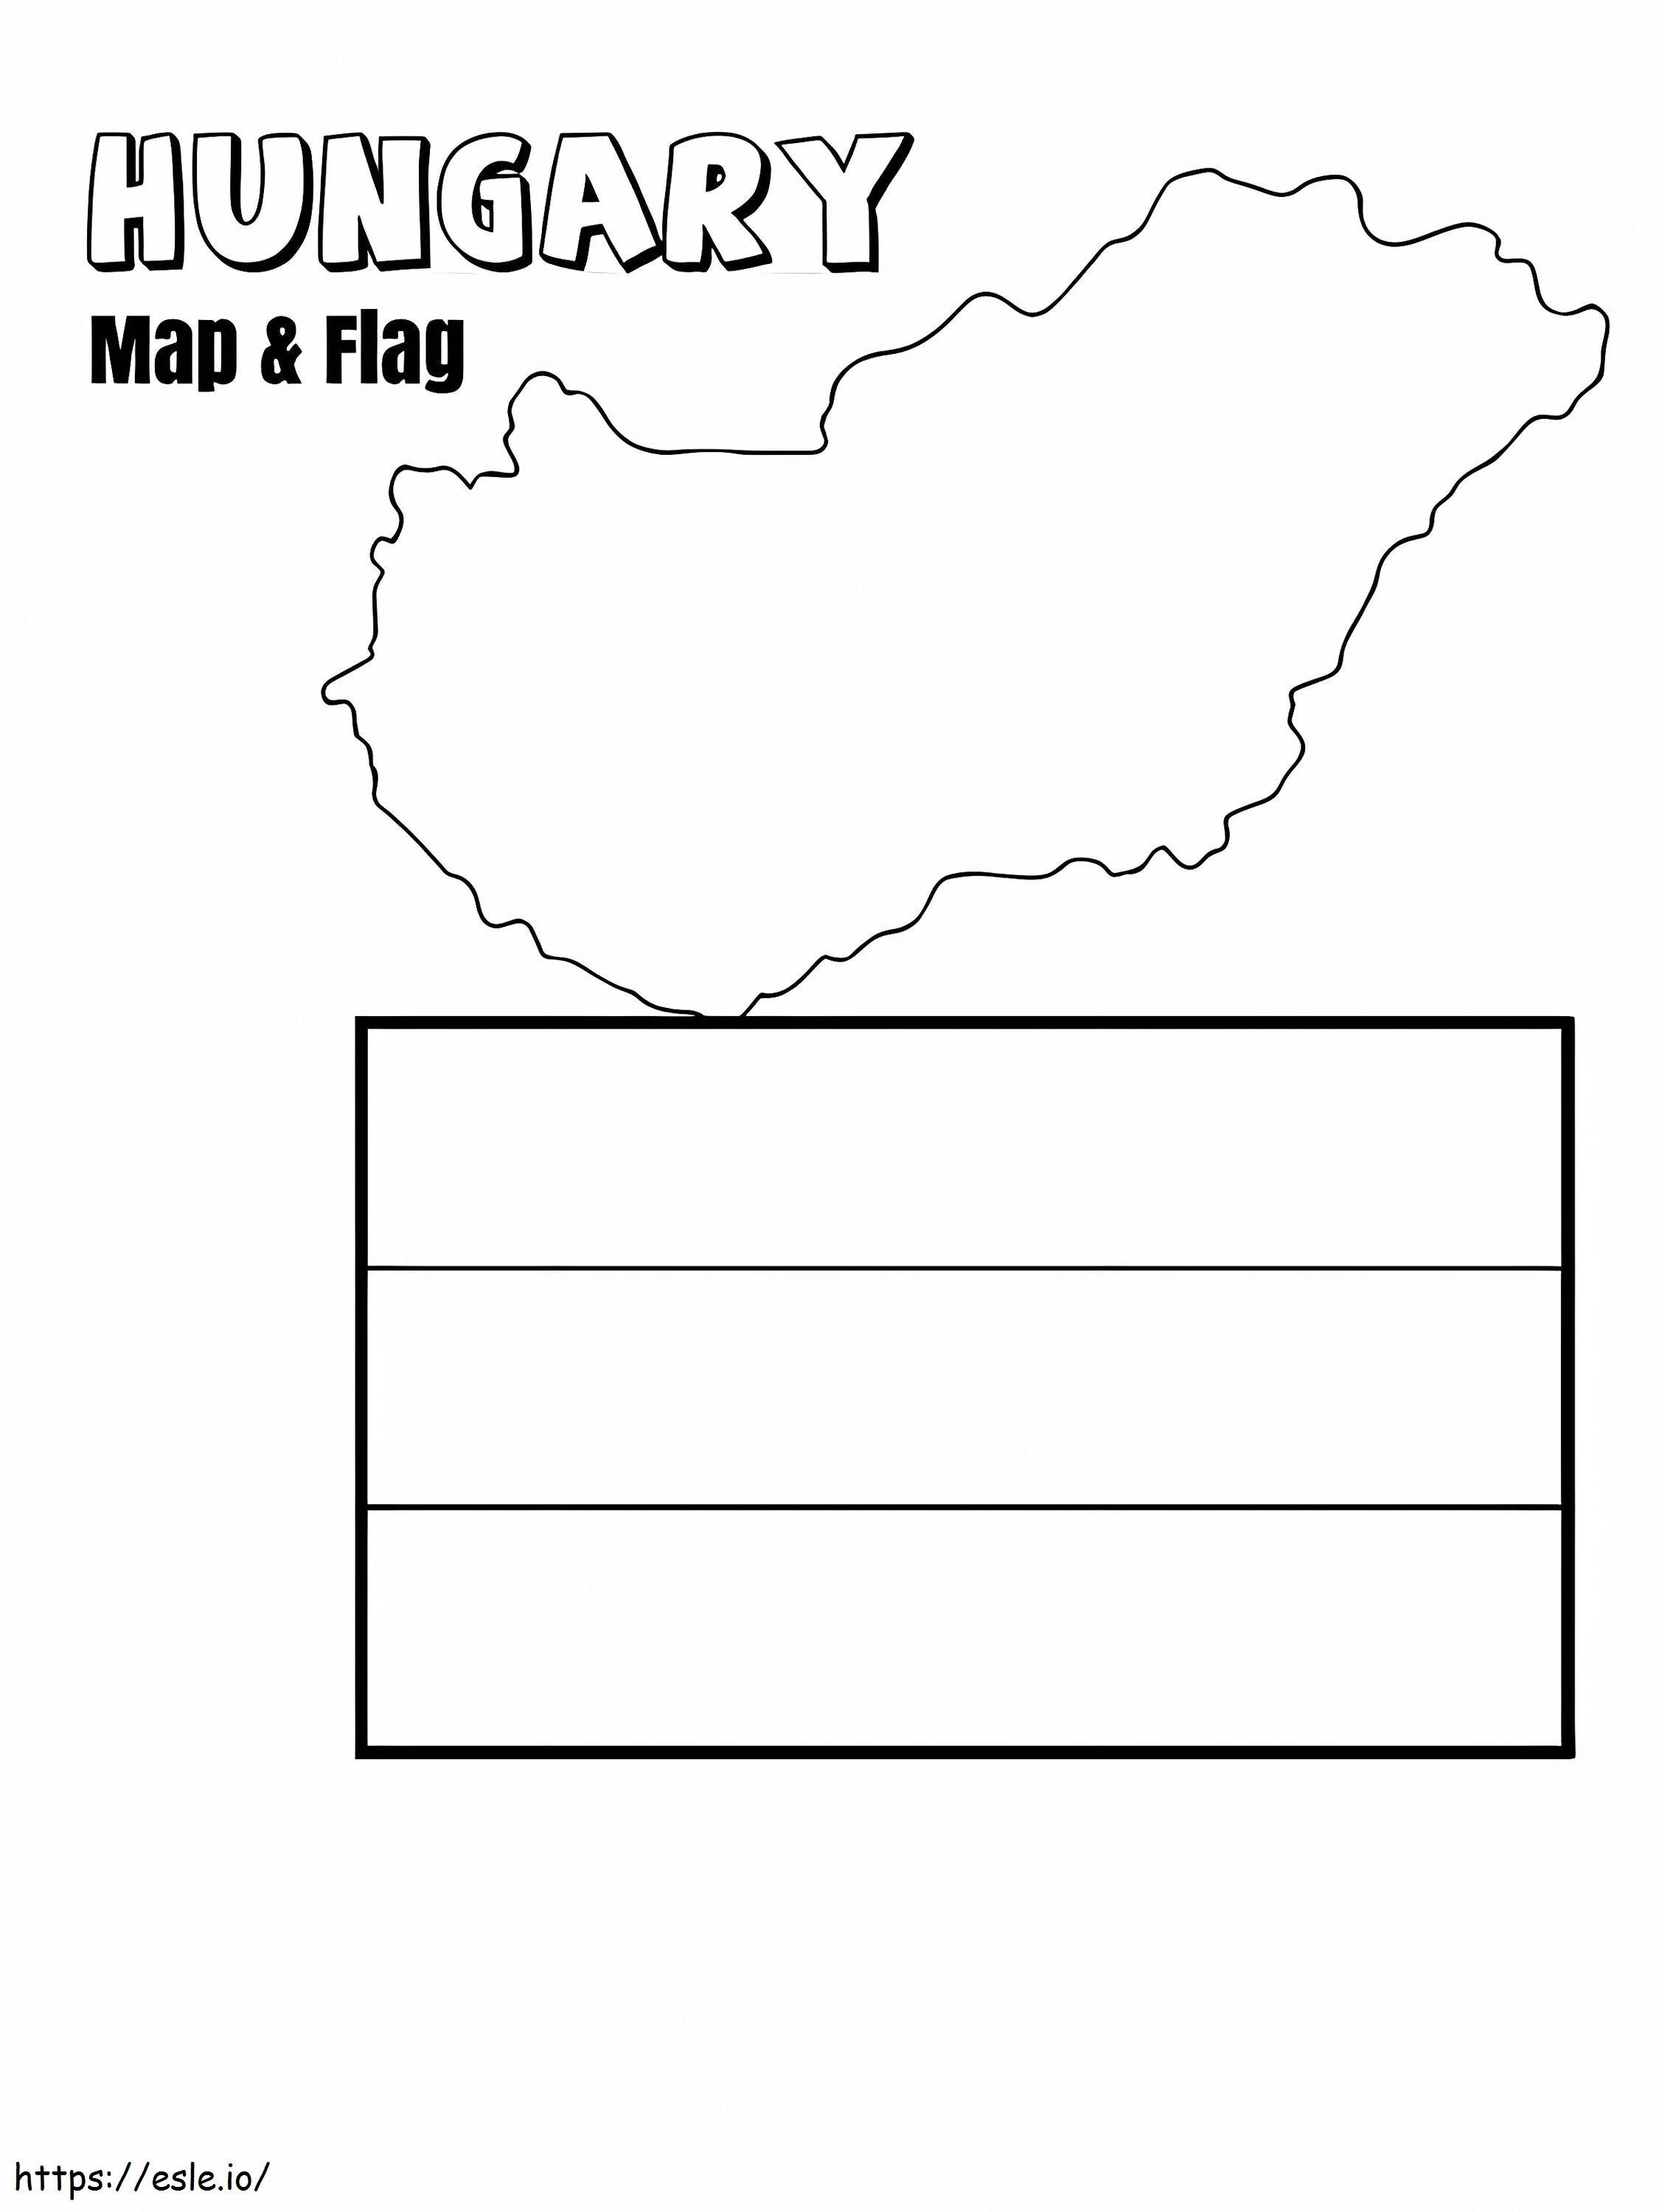 Mappa e bandiera dell'Ungheria da colorare